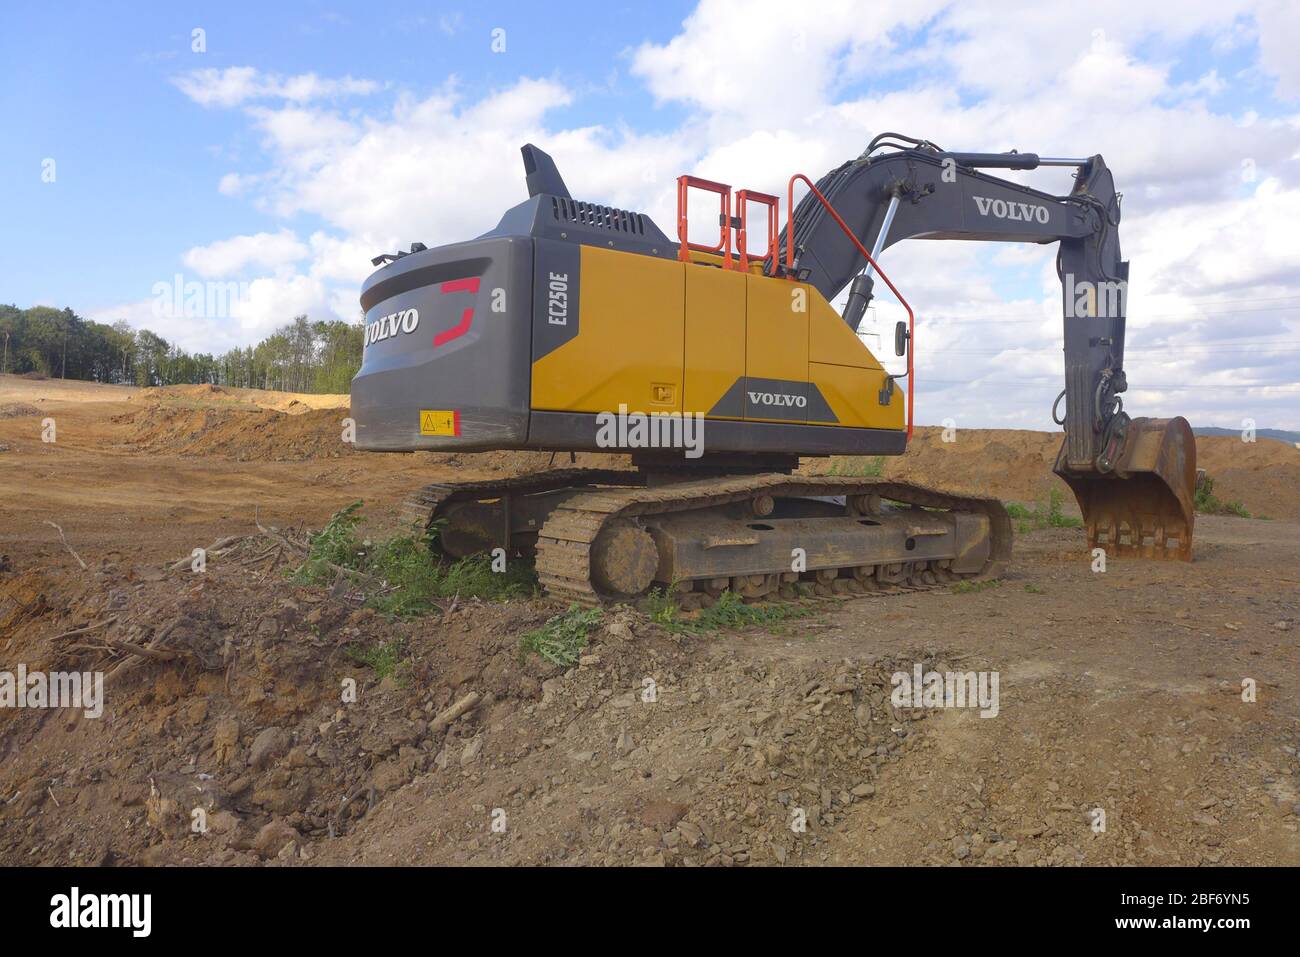 Pelle hydraulique pendant les travaux au sol, la destruction des paysages, Allemagne Banque D'Images